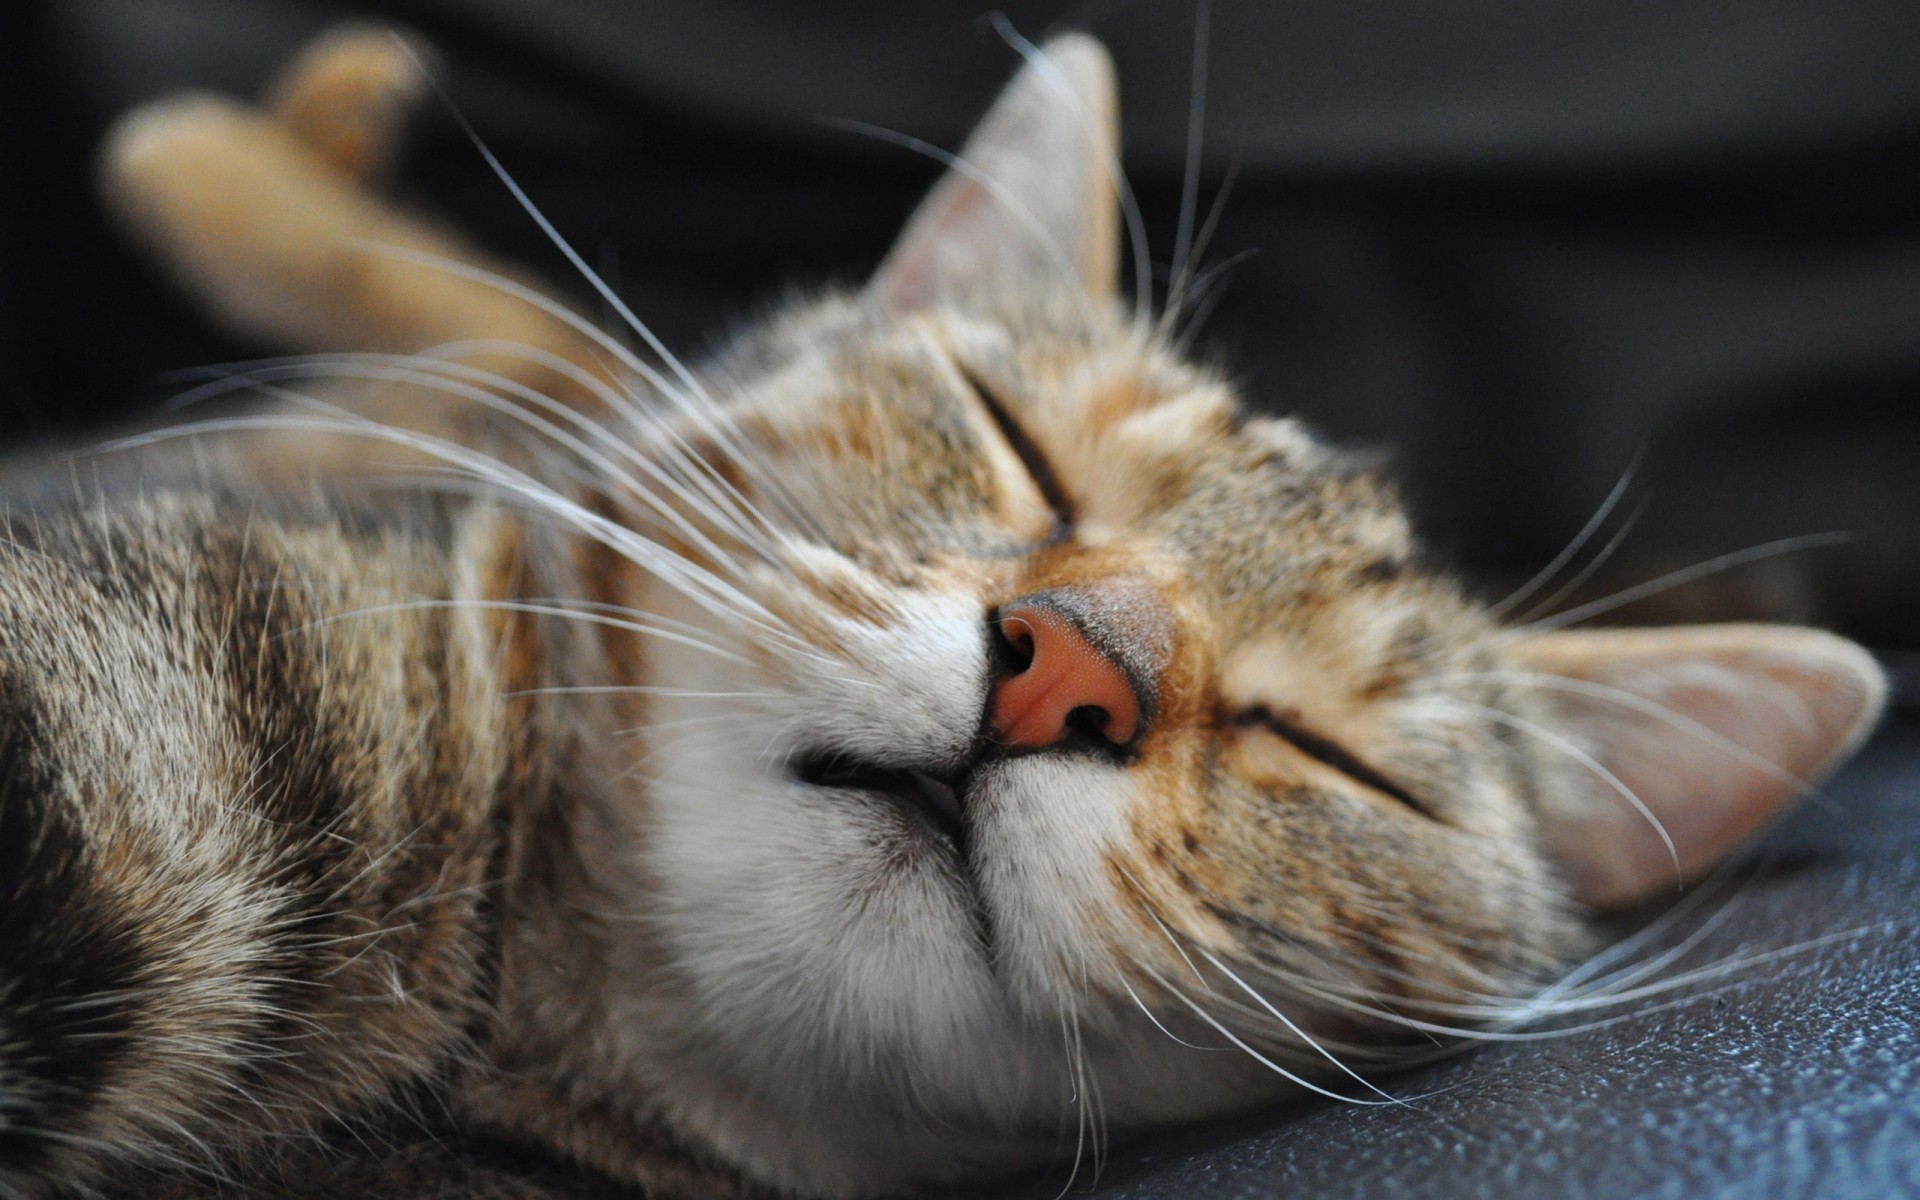 кошки кошка животное пэт мех млекопитающее котенок портрет милые глаз сон отечественные ус просмотр молодой пуховый волосы пушистый мало очаровательны табби животные